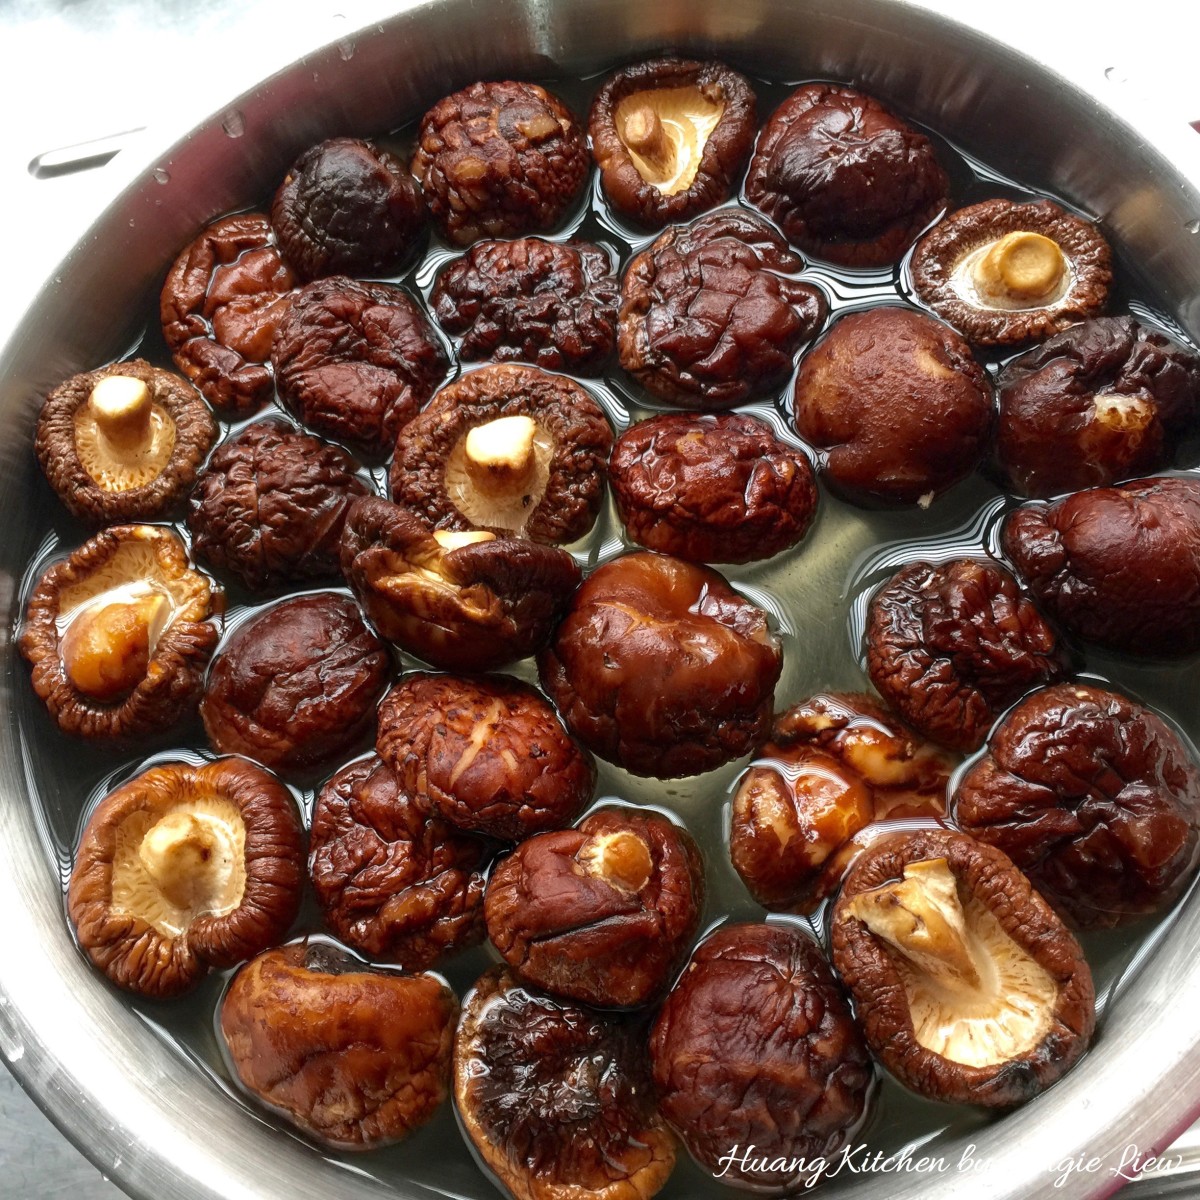 Steamed Shiitake Mushroom Beancurd 蒸香菇豆腐 - Soak shiitake mushroom